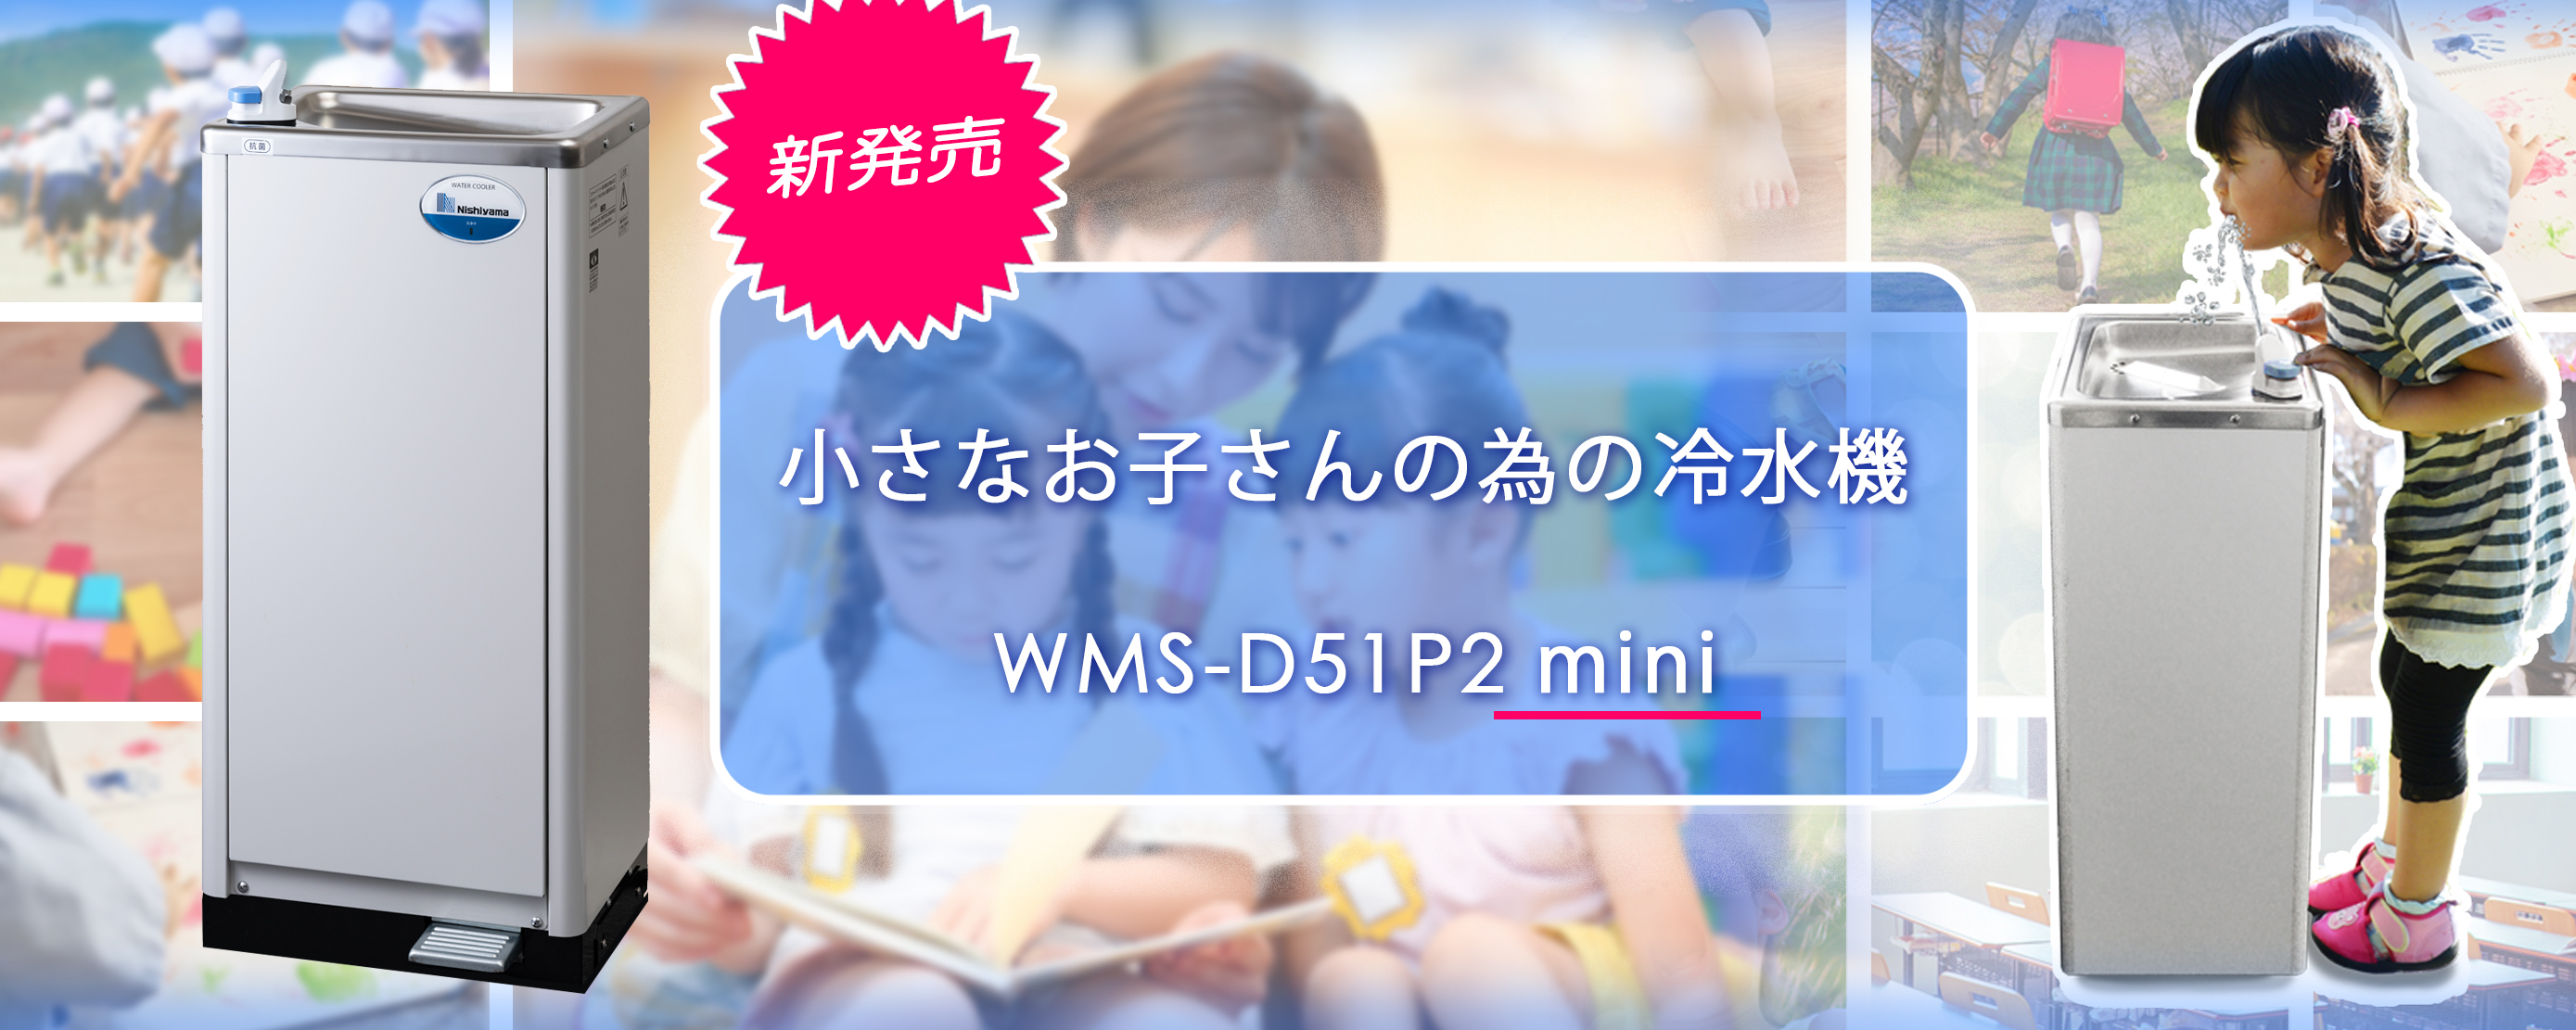 WMS-D51P2mini